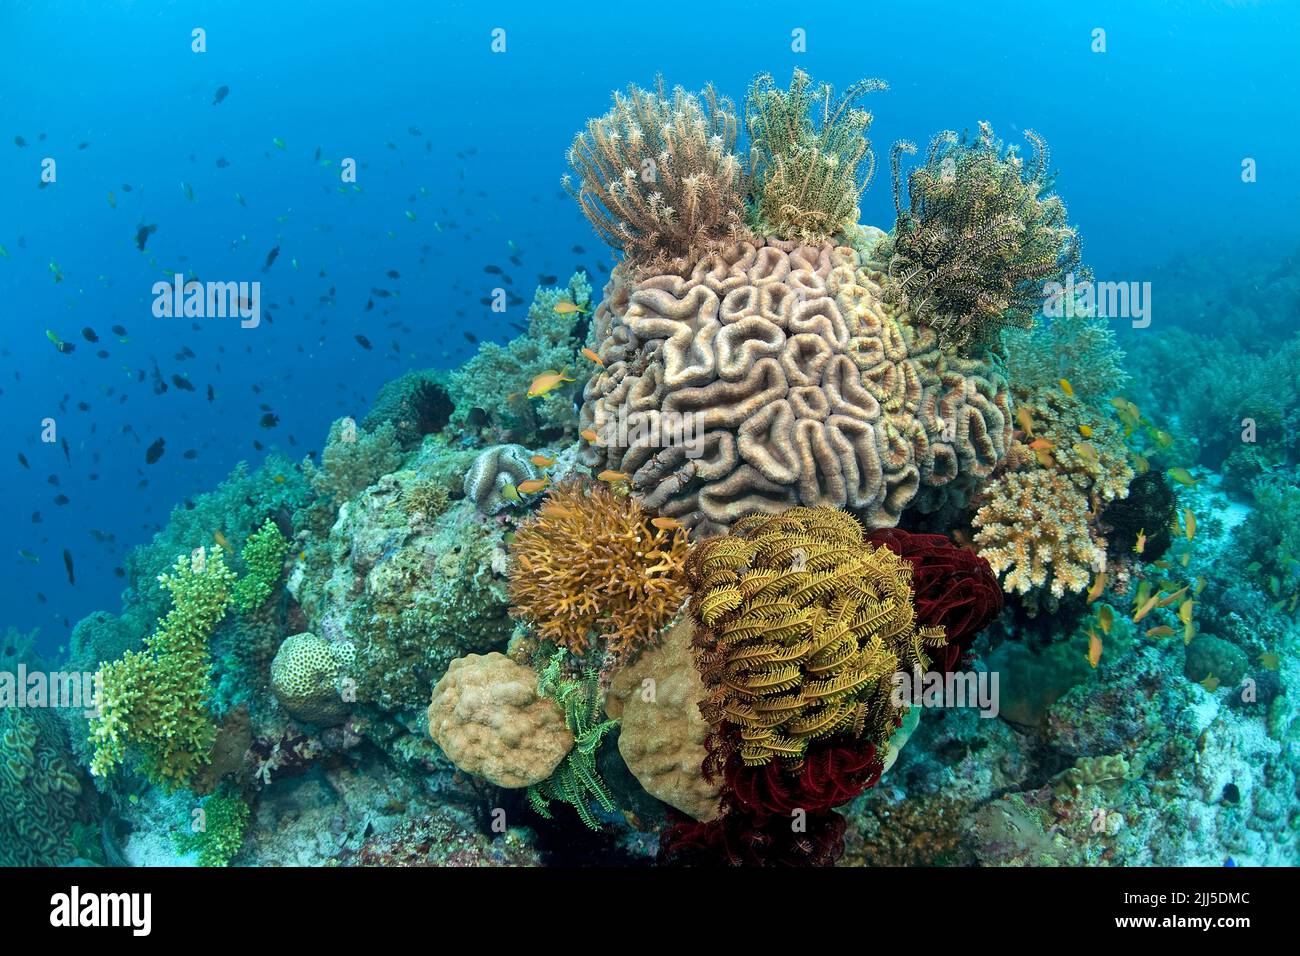 Coourful Coral ree, crinoïdes ou étoiles de plumes (Comanthus sp.) sur un Sympyllia Brain Coral (Symphyllia recta), Grande barrière de corail, Australie Banque D'Images